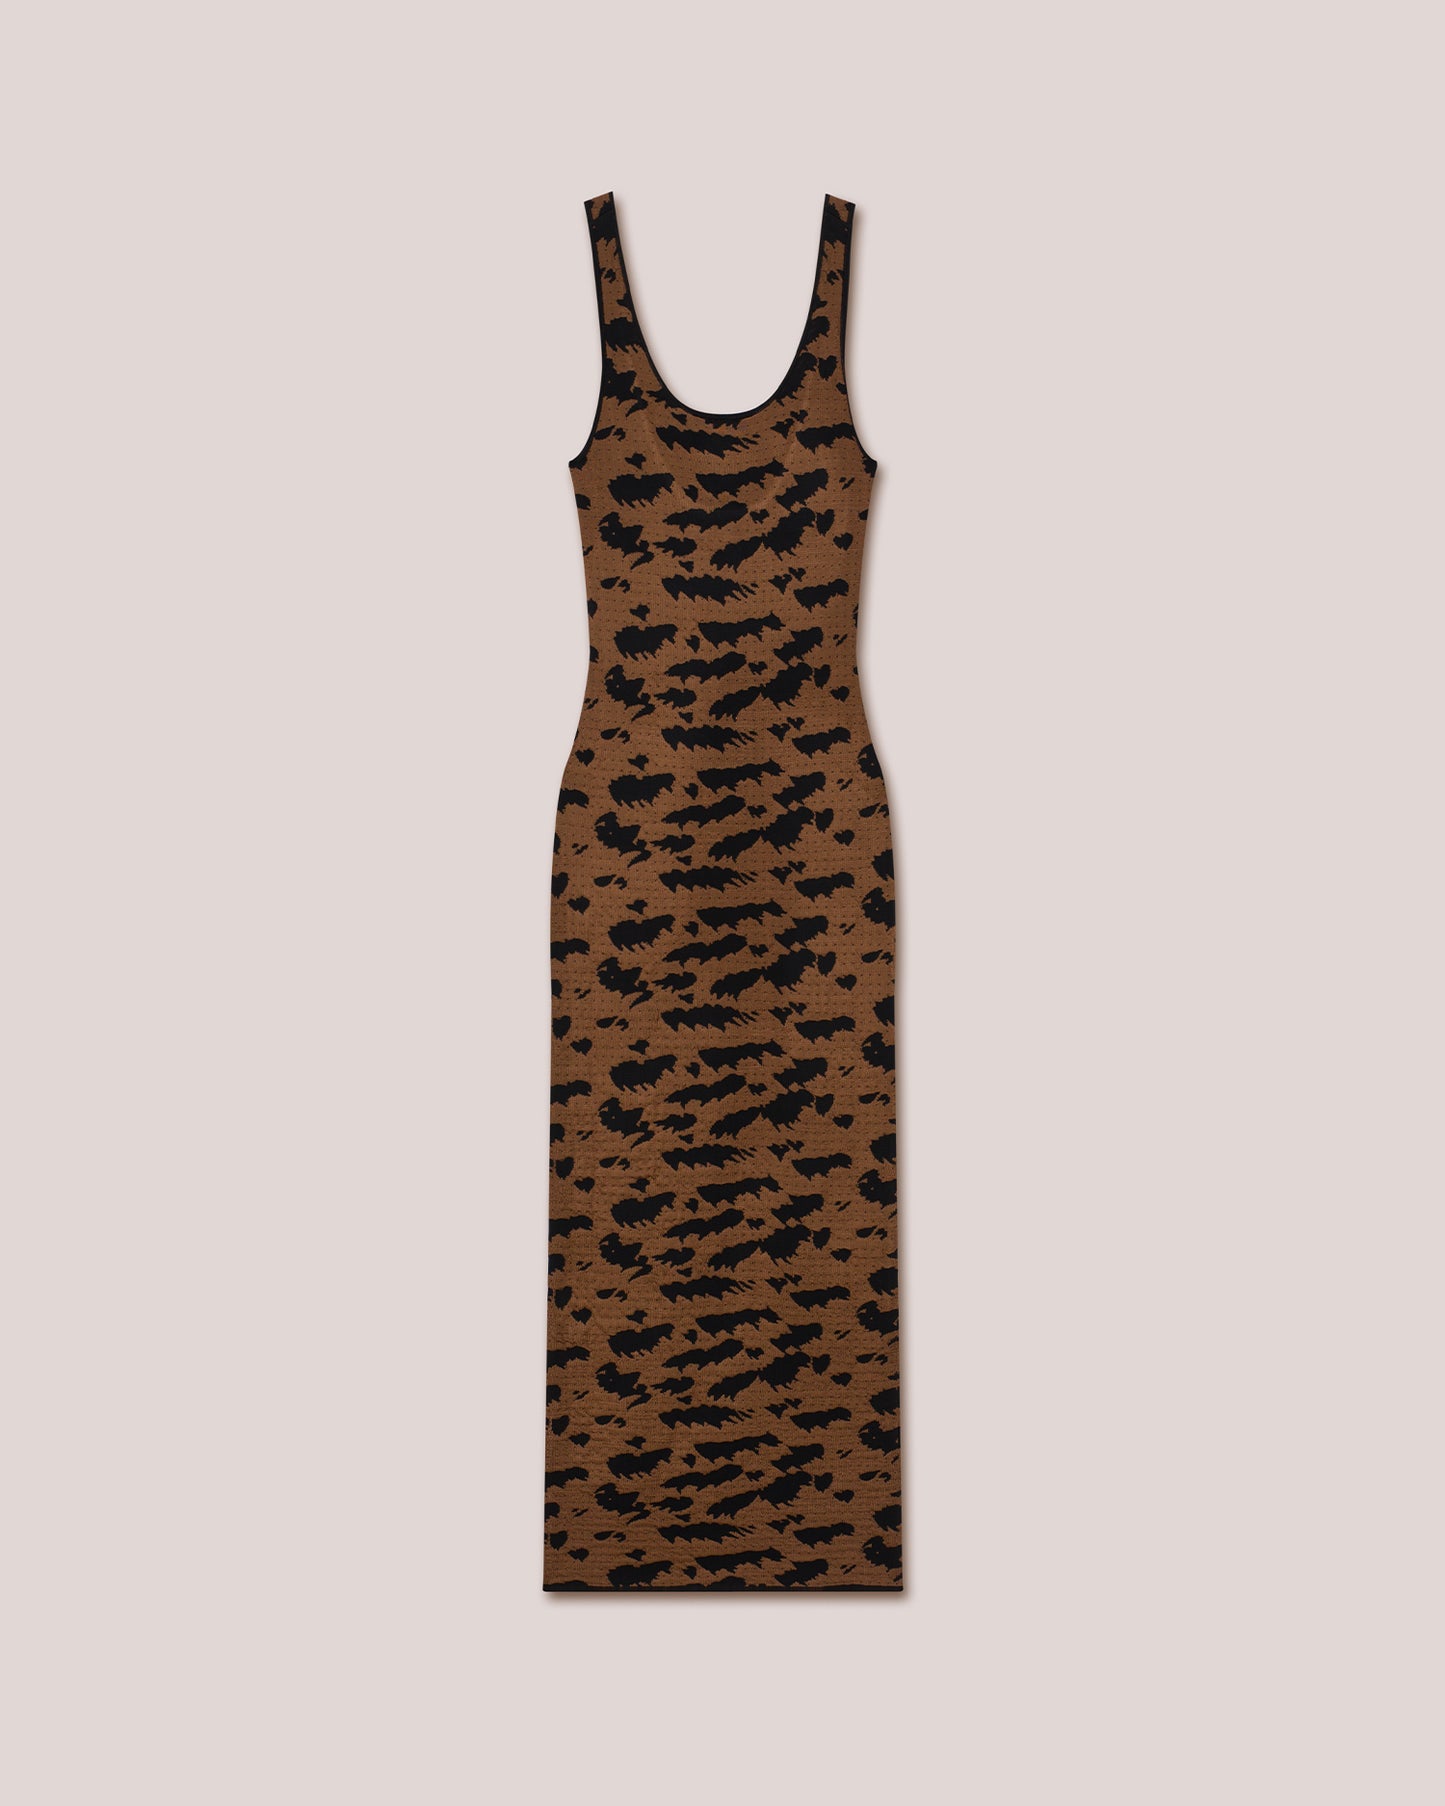 Leanor - Shiny Jacquard Midi Dress - Black Brown